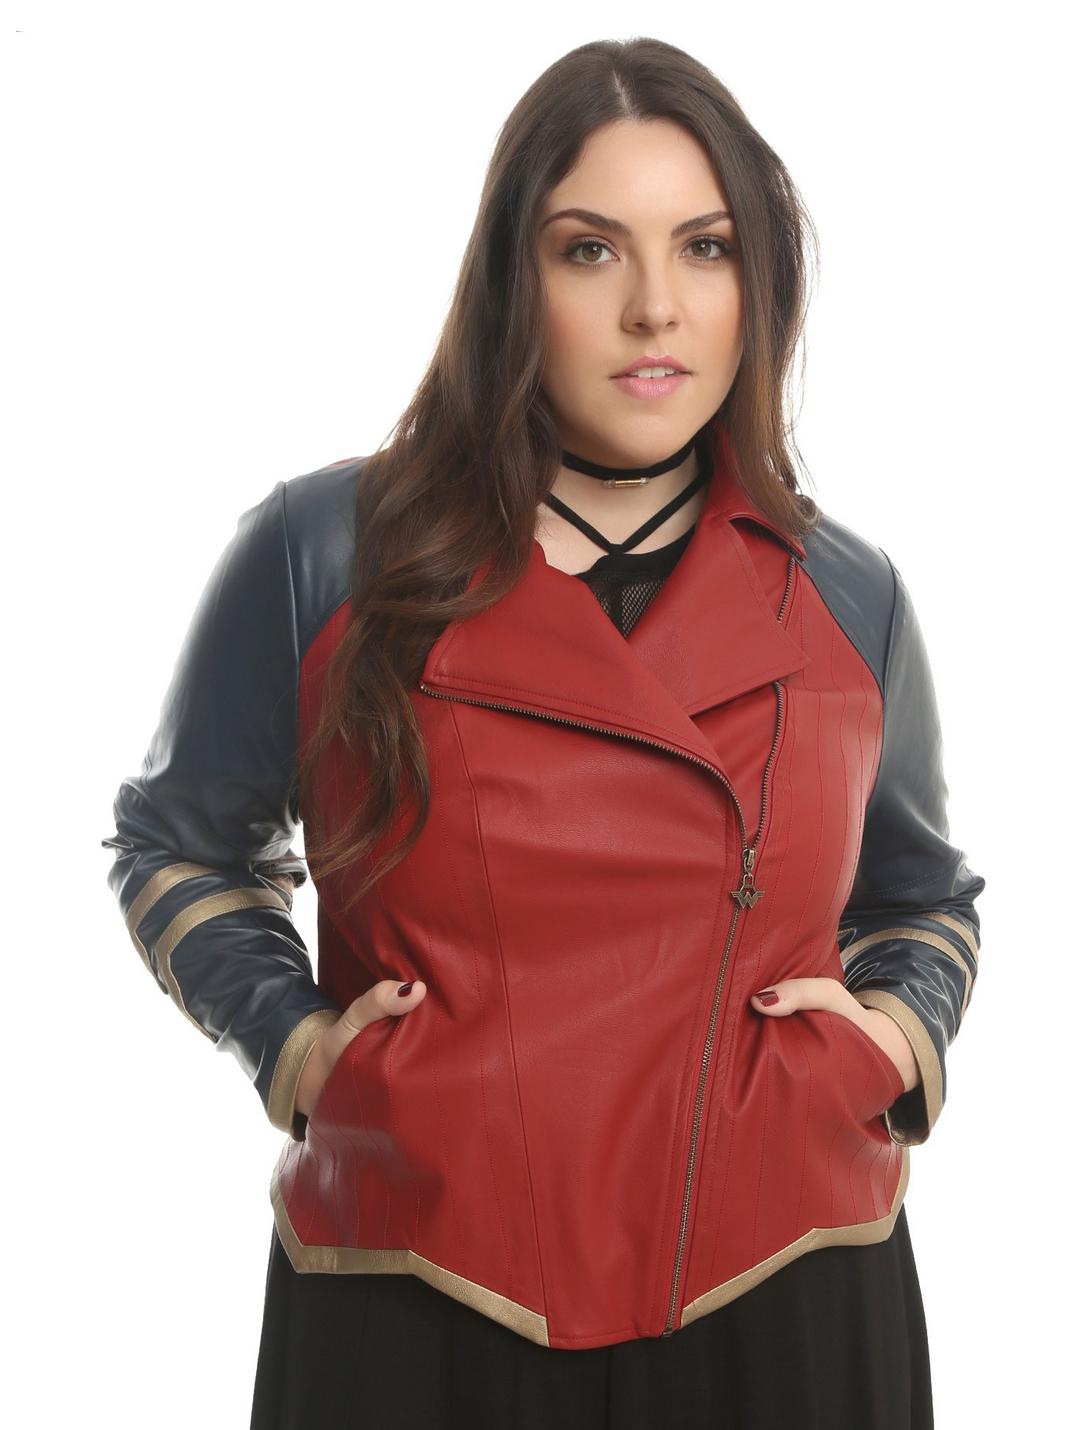 Her Universe DC Comics Wonder Woman Armor Faux Leather Jacket Plus Size, MULTI, hi-res